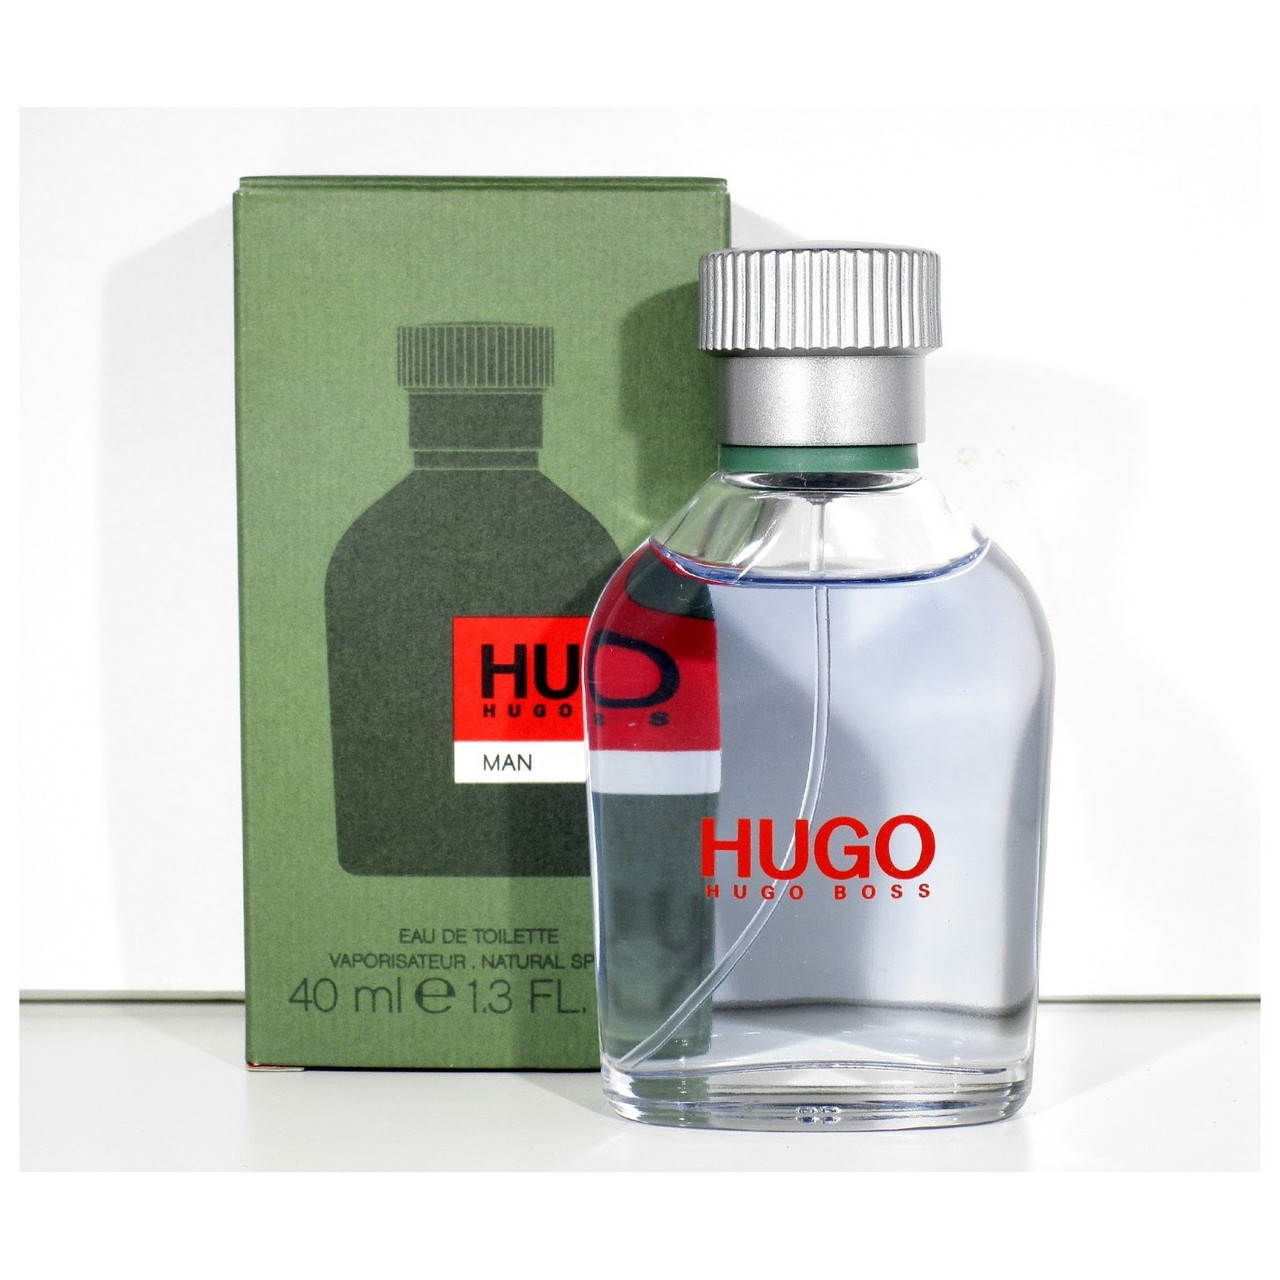 Hugo Boss Hugo Man edt 40ml